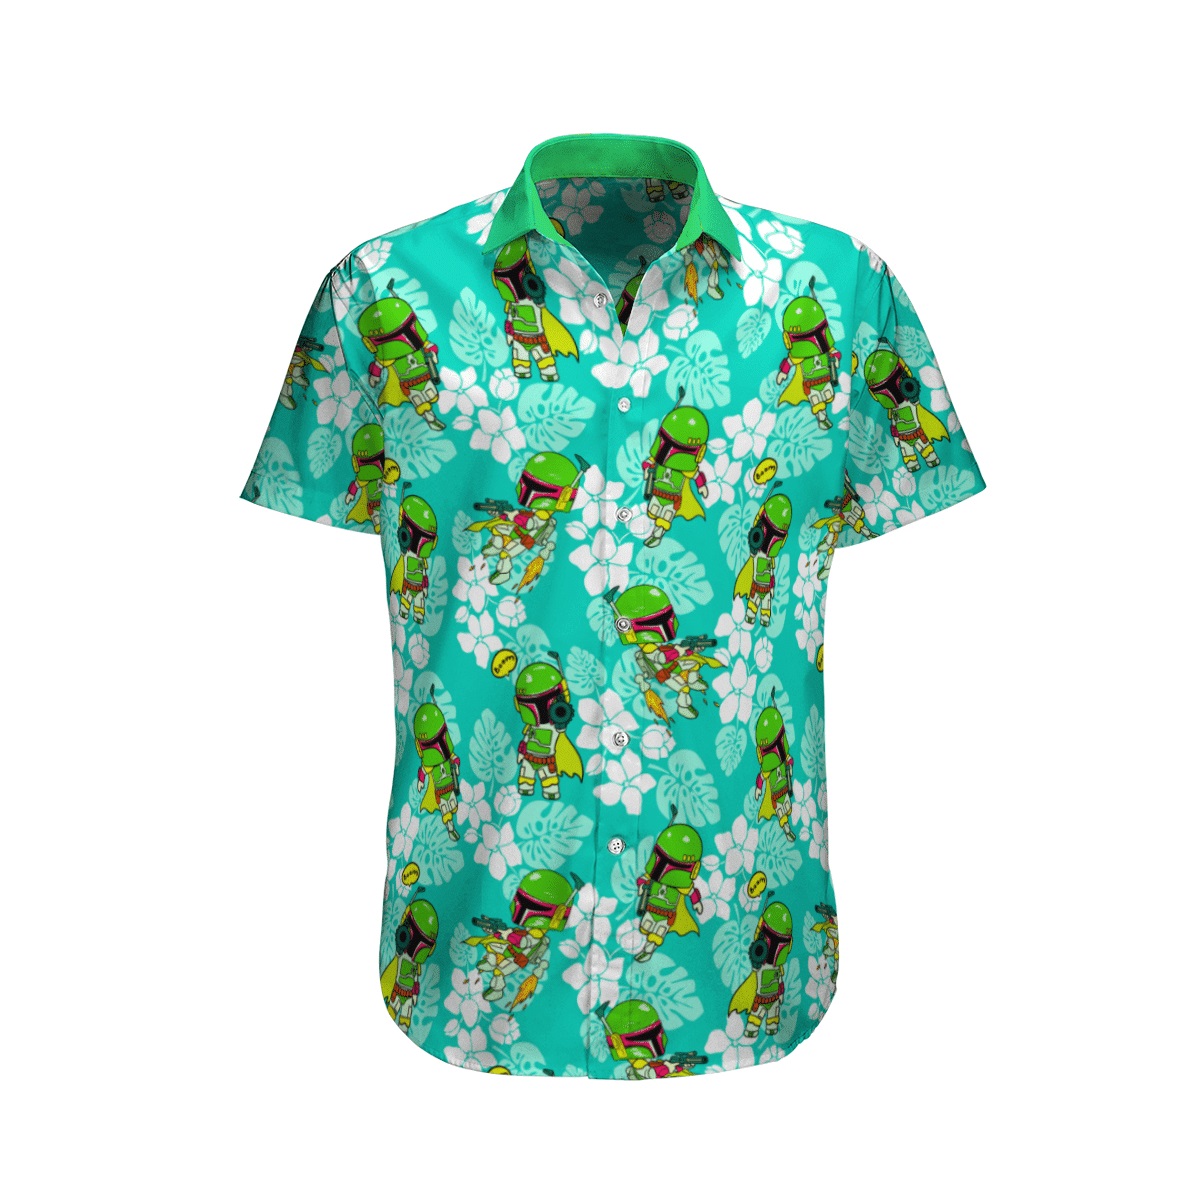 Boba Fett tropical beach hawaiian shirt, beach shorts - Picture 1